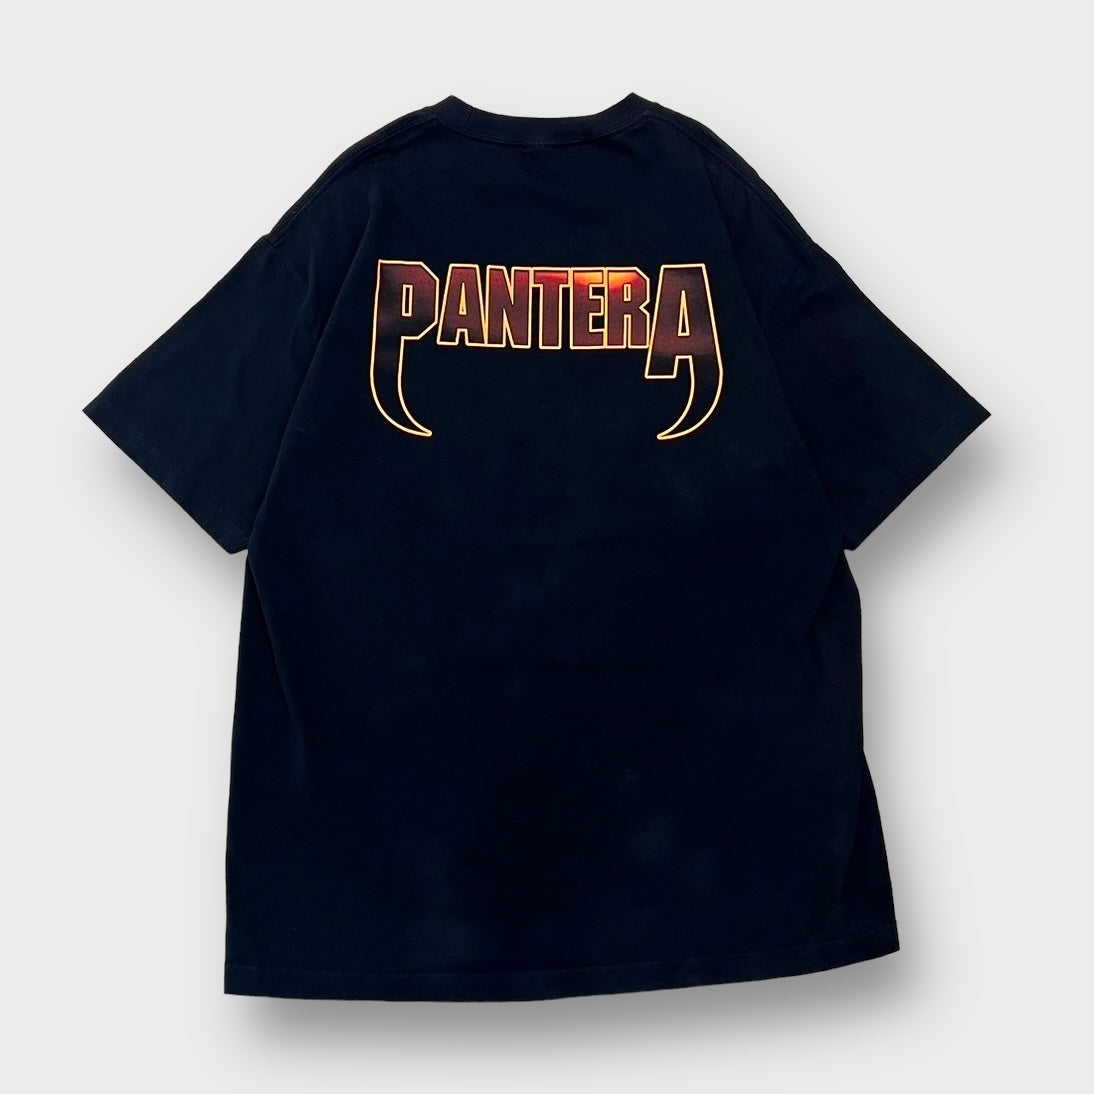 00's "PANTERA" Band t-shirt